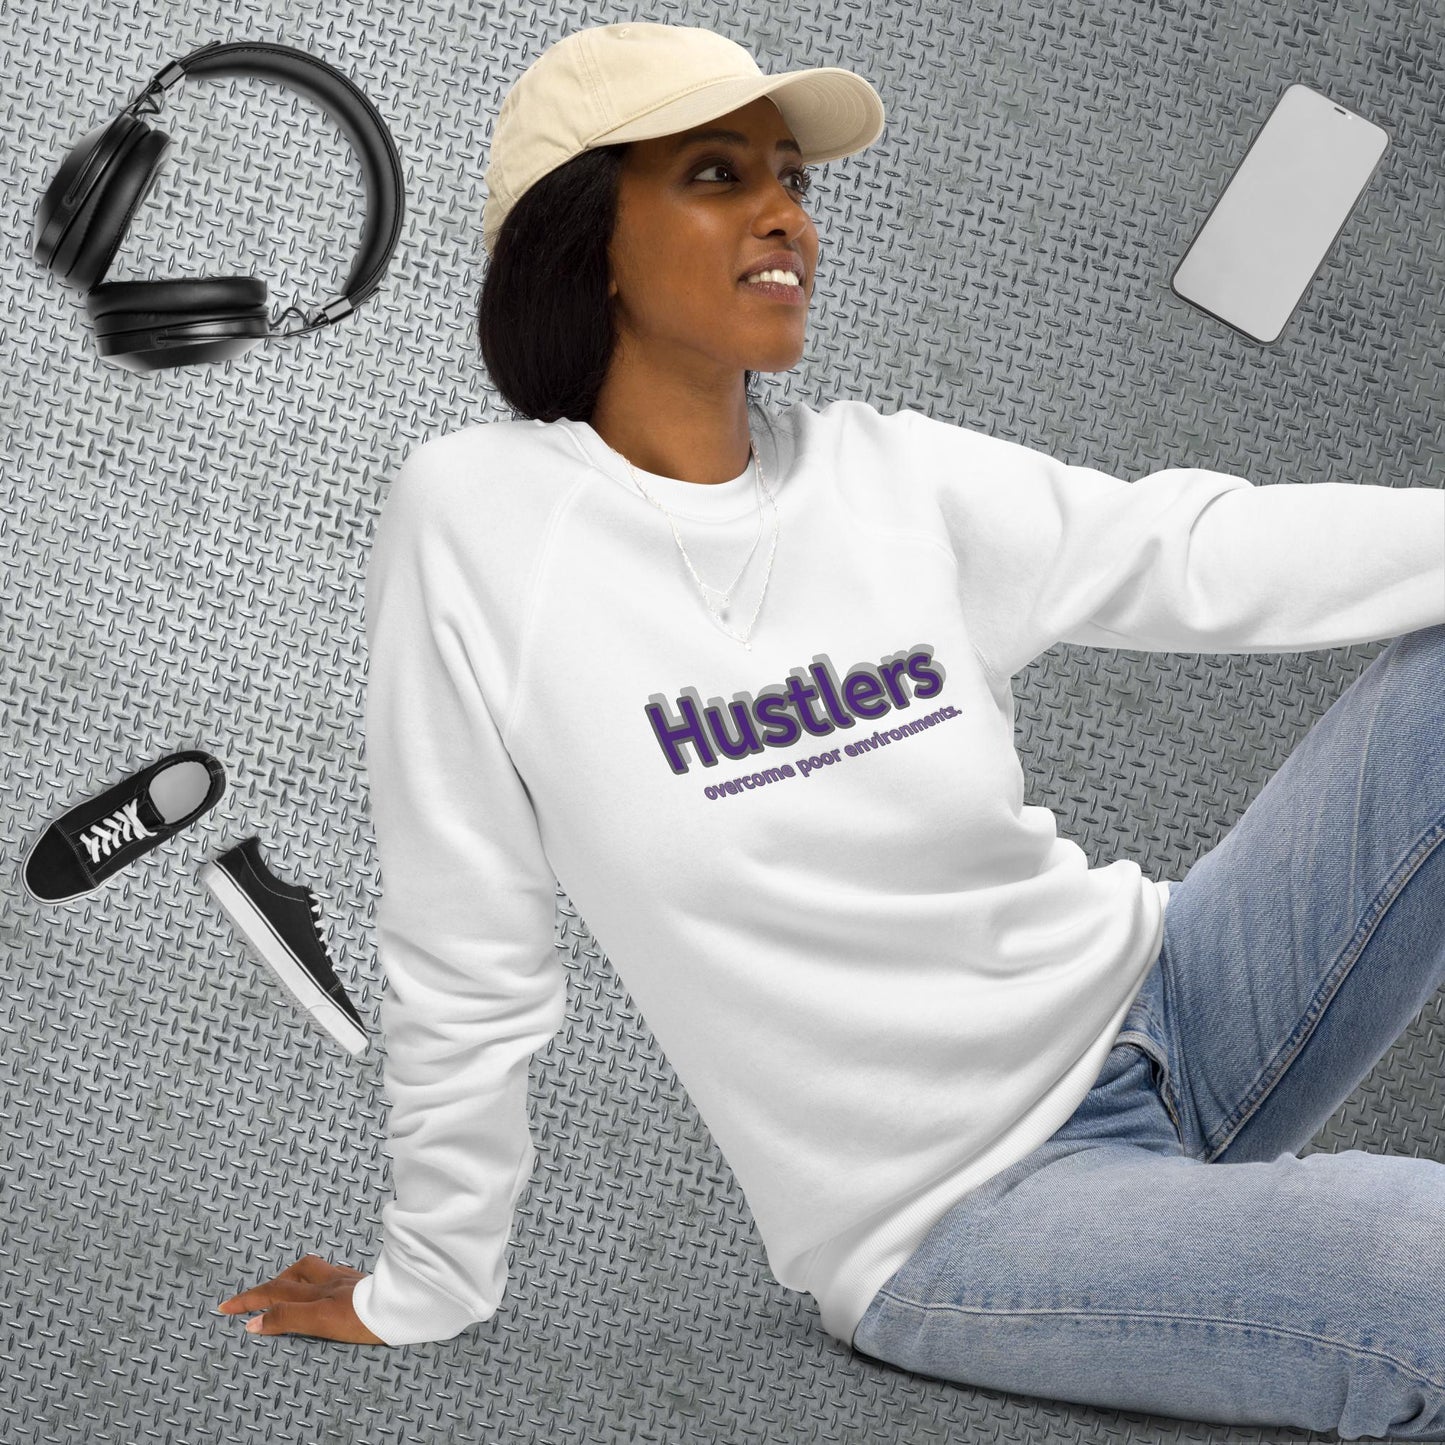 Hustlers purgray Unisex sweatshirt by Amagiri Young